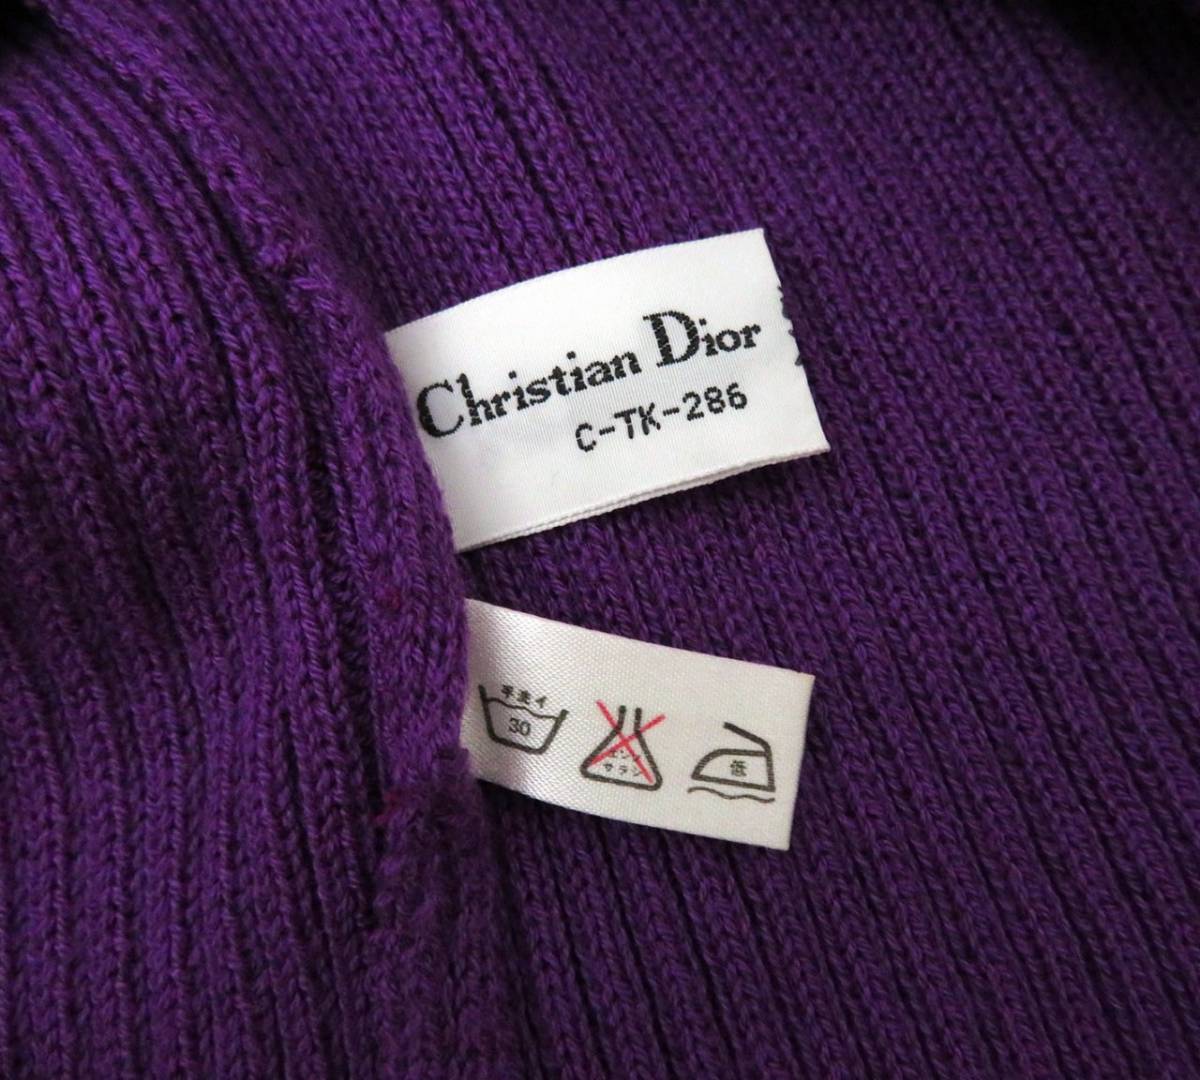 4792 美品 Christian Dior クリスチャンディオール vintage ロゴ刺繍入り 半袖 ニット セーター Tシャツ カットソー 紫 パープル 希少 の画像9